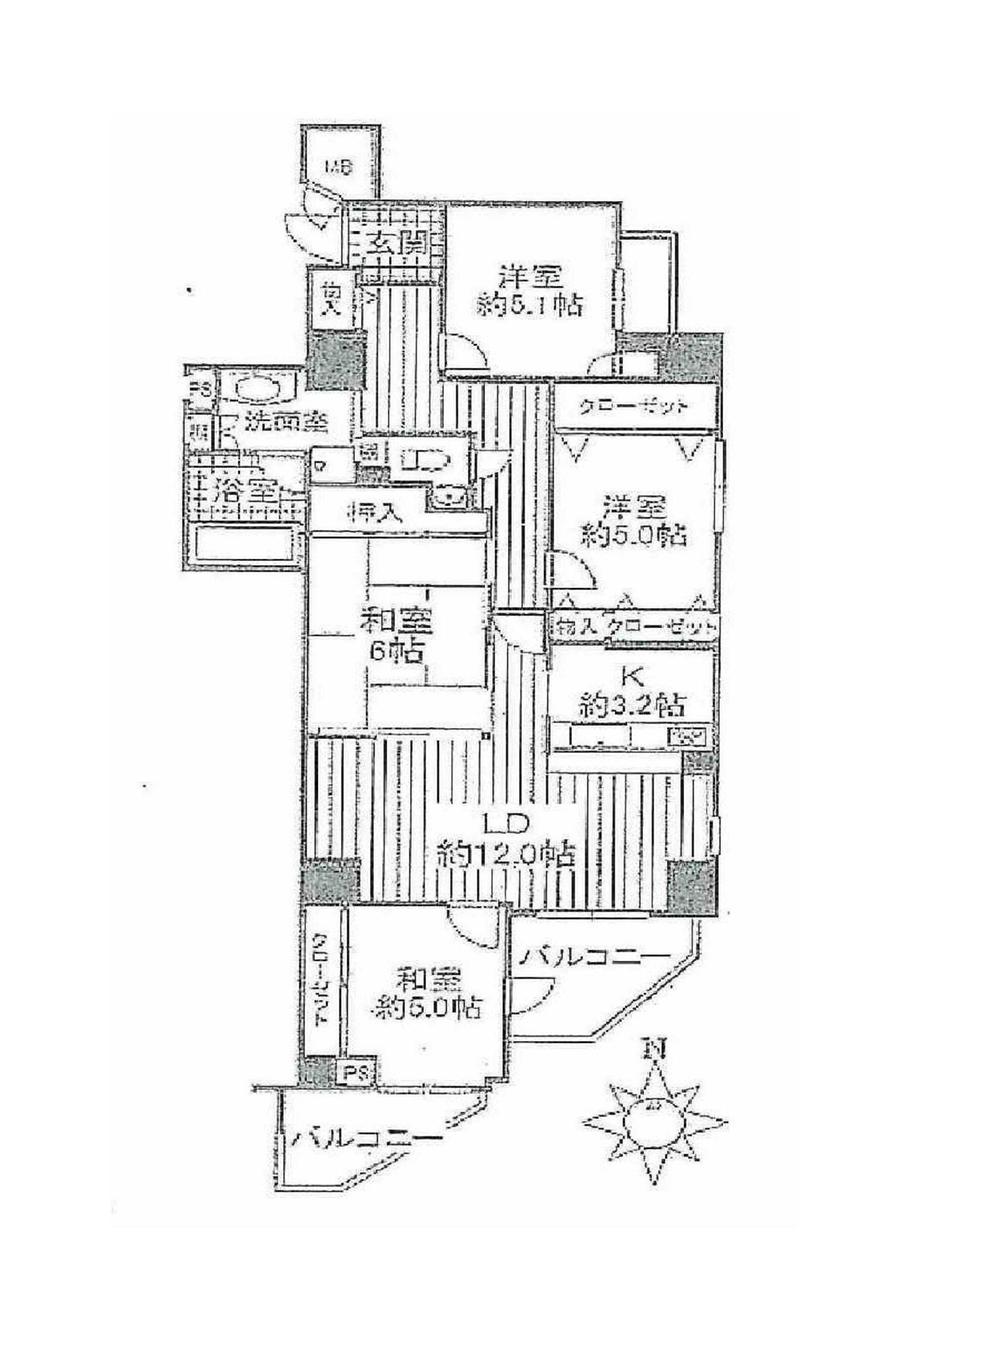 Floor plan. 4LDK, Price 36,900,000 yen, Occupied area 89.01 sq m , Balcony area 9.9 sq m floor plan